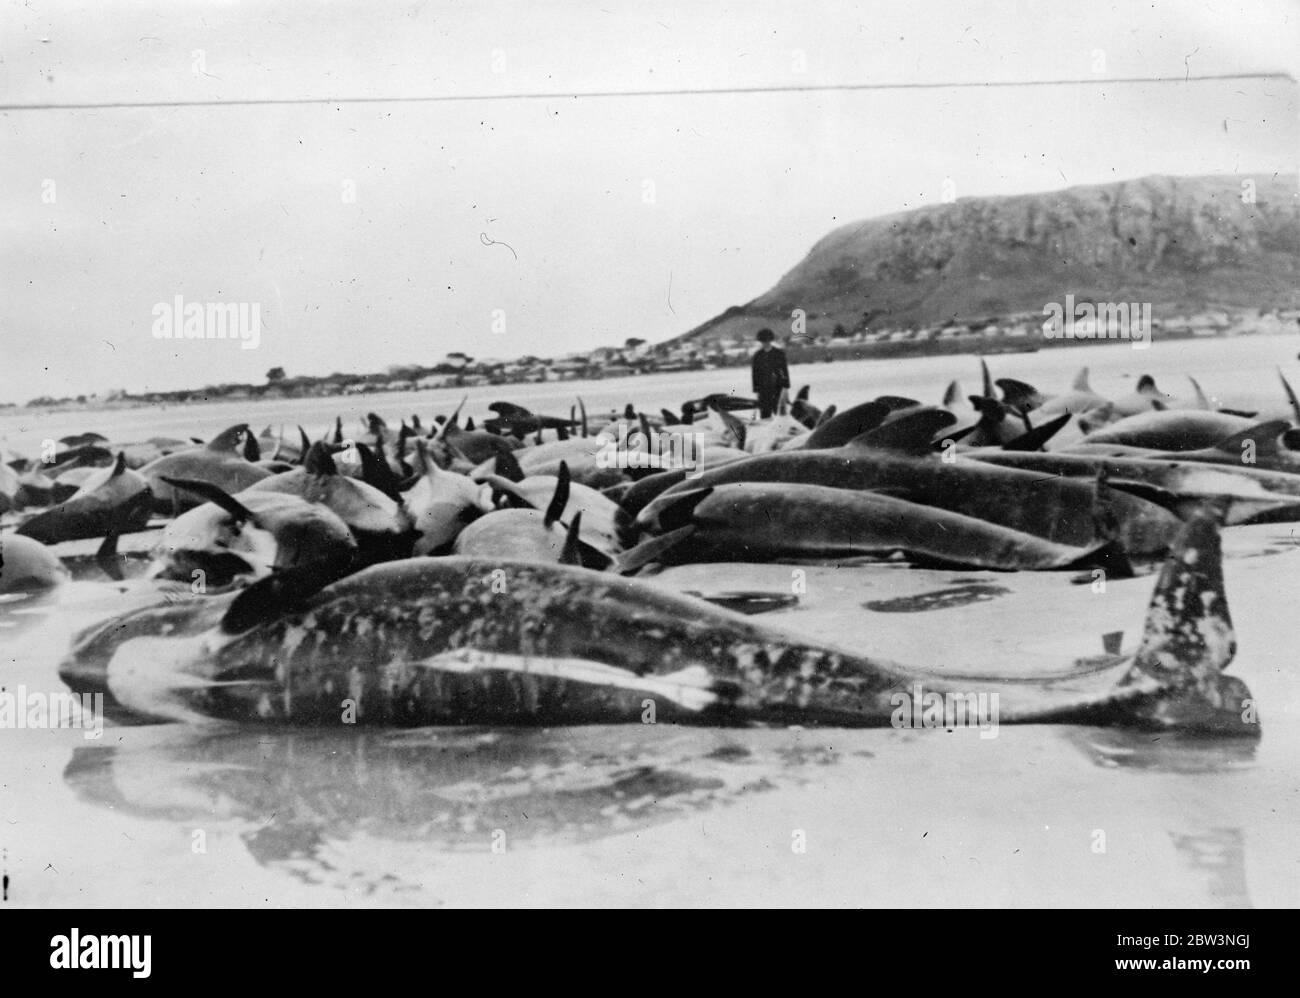 Hunderte von Walen strandeten am tasmanischen Strand. Fast 300 Wale in der Länge von vier Fuß bis 25 Fuß wurden am Tatlow ' s Strand gestrandet, etwa eine Meile östlich von Stanley, Tasmanien. Aus irgendeinem unerklärlichen Grund gingen die Wale an Land auf einem Sandspieß und konnten nicht wieder tiefes Wasser. Es wird geschätzt, dass ihre Entfernung die Behörden kosten £ 4000 mindestens . Foto zeigt, die Wale gestrandet auf Tatlow ' s Beach, Tasmanien. 24. November 1935 Stockfoto